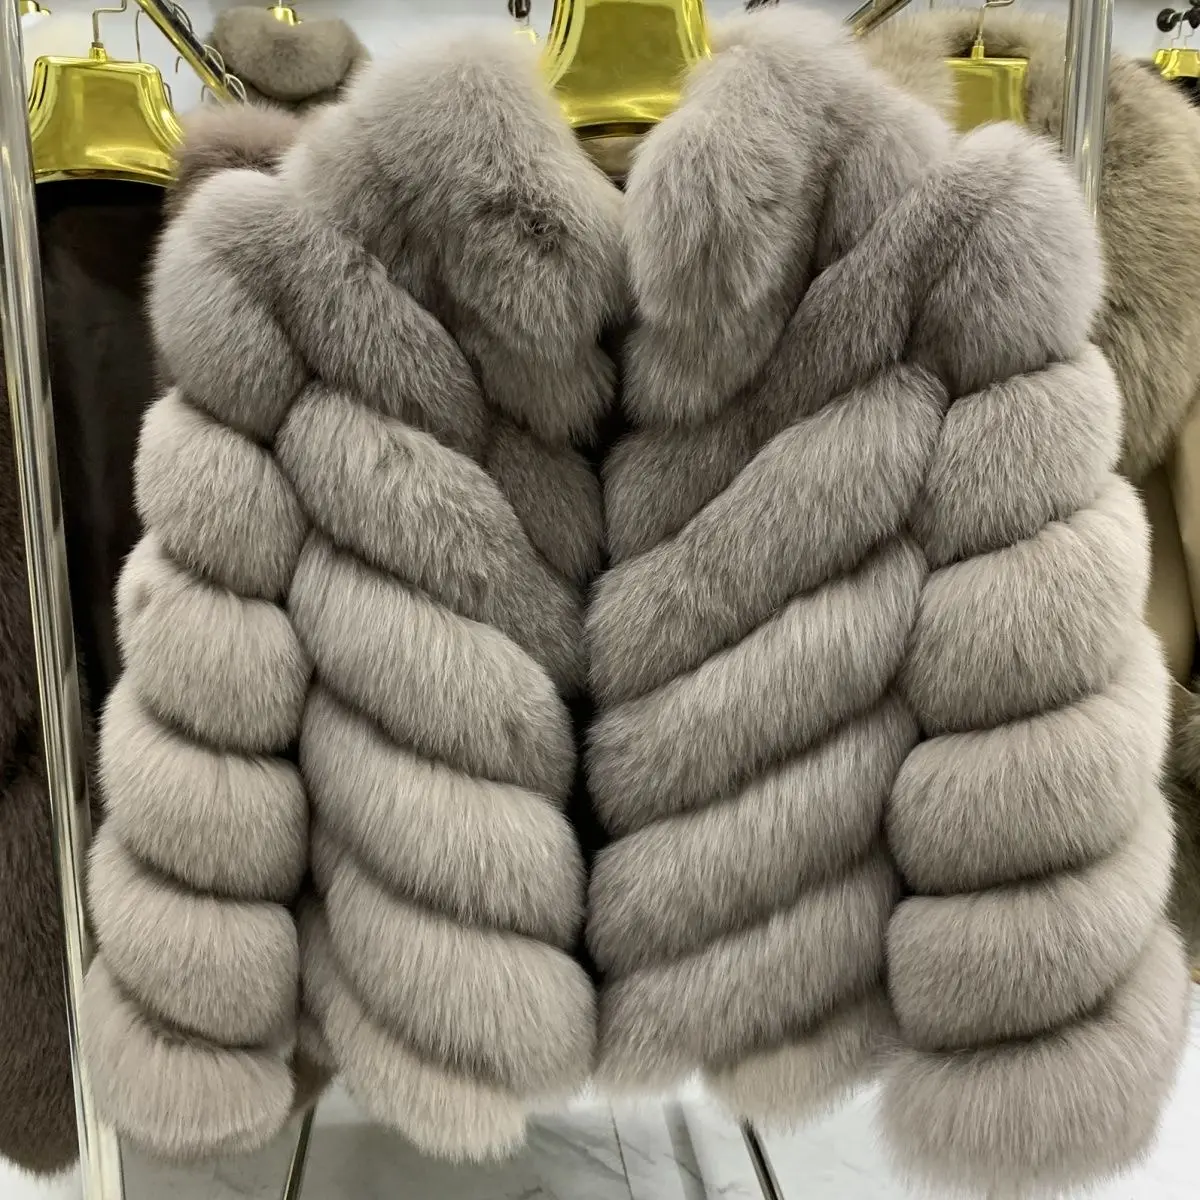 겨울 신상품 의류 따뜻한 럭셔리 모피 푹신한 모피 재킷 여성용 모피 코트 여성 코트 의류